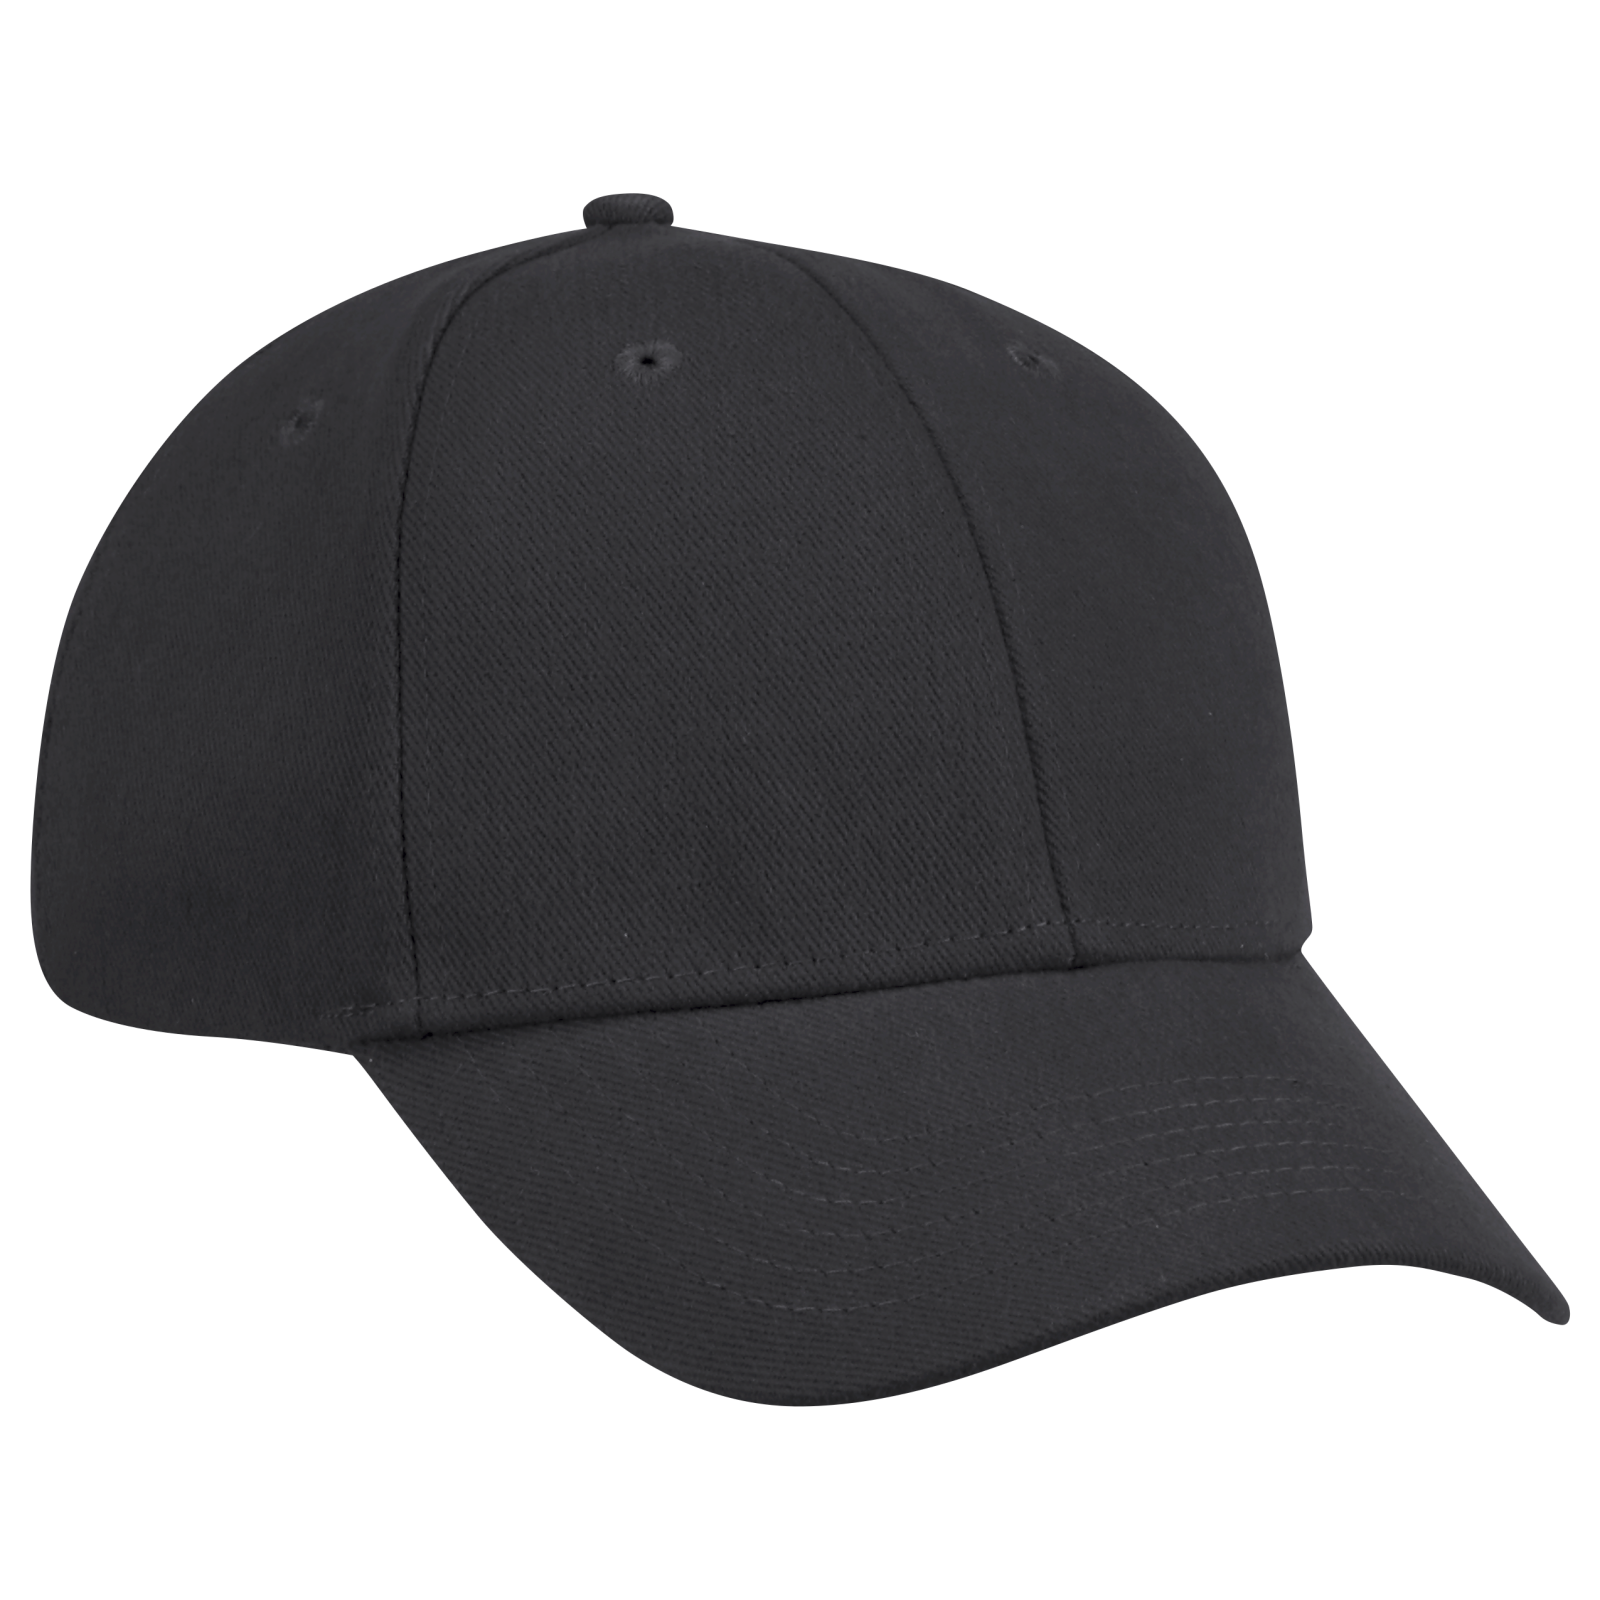 Ball cap. Кепка форменная. Форма для бейсболки. Бейсболка черная. Ball cap черная.